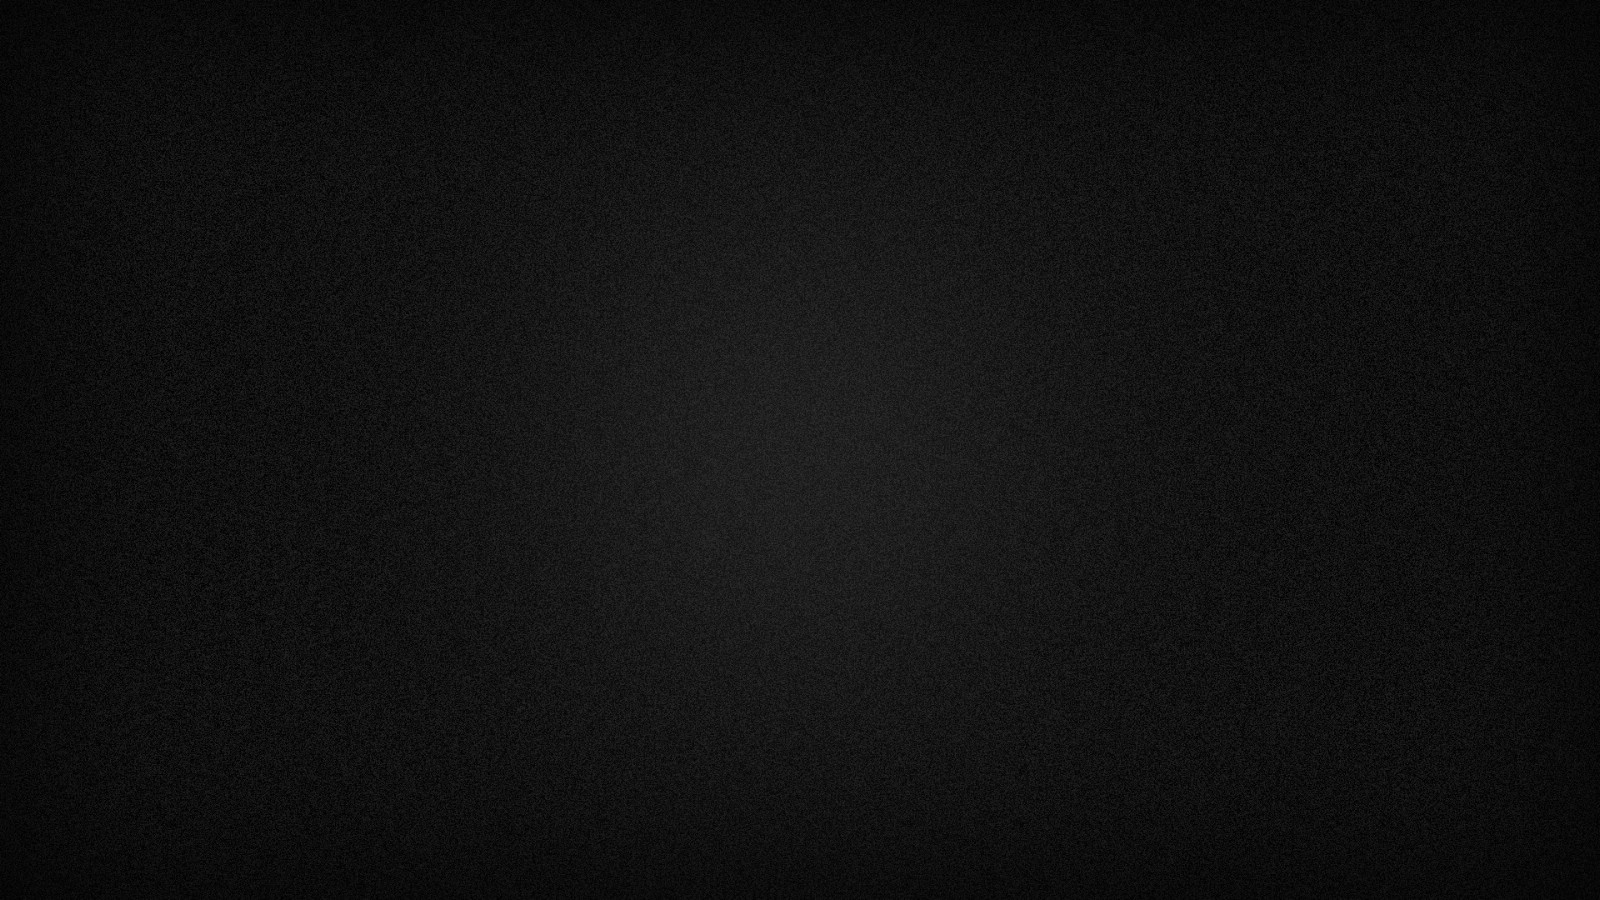 General 1600x900 black minimalism texture